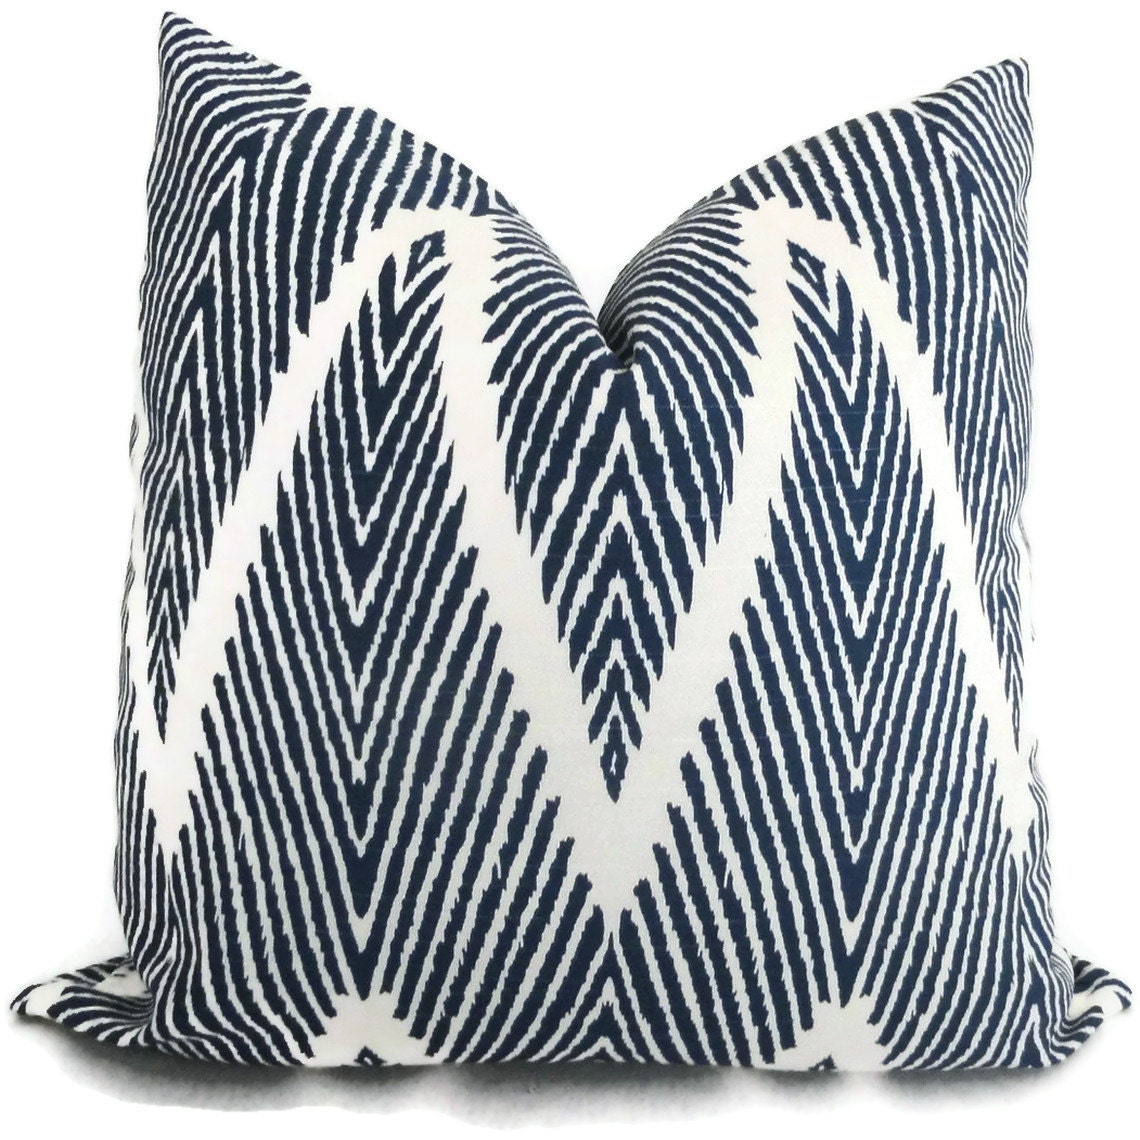 Indigo Blue Ikat Chevron Decorative Pillow Cover, 18x18, 20x20, 22x22 or lumbar pillow Throw Pillow, Accent Pillow, Toss Pillow